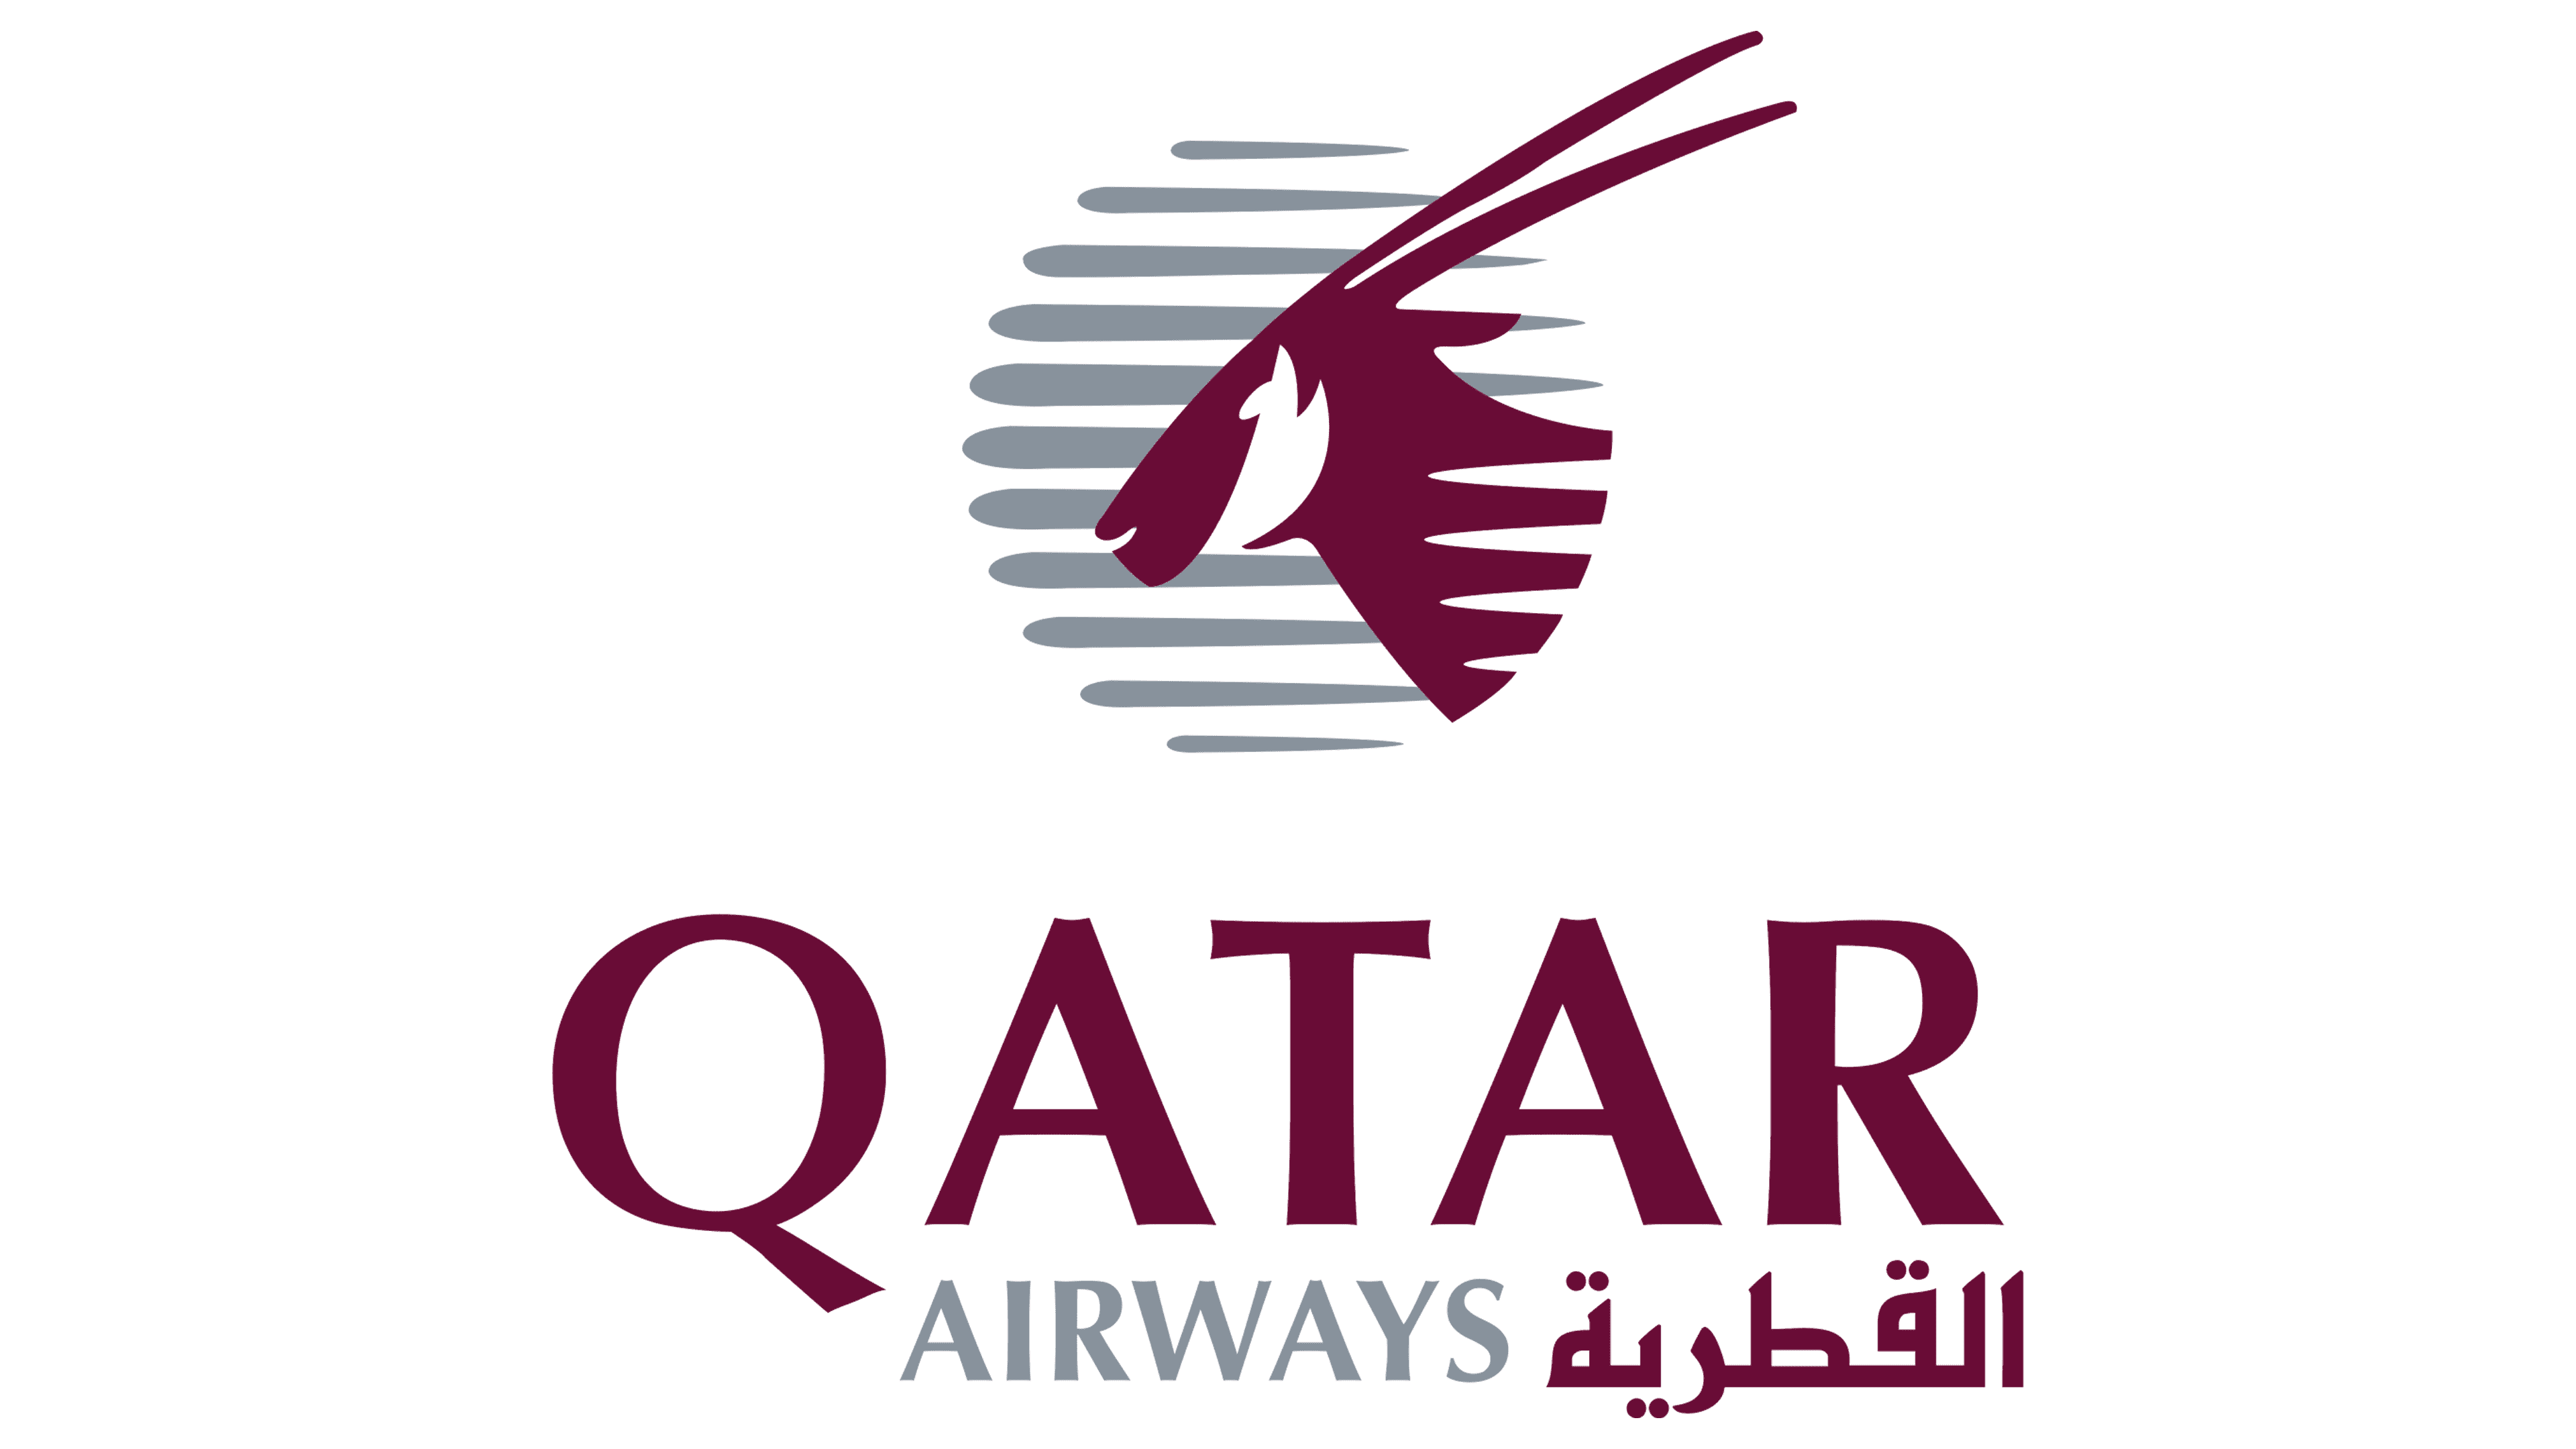 Voucher codes Qatar Airways